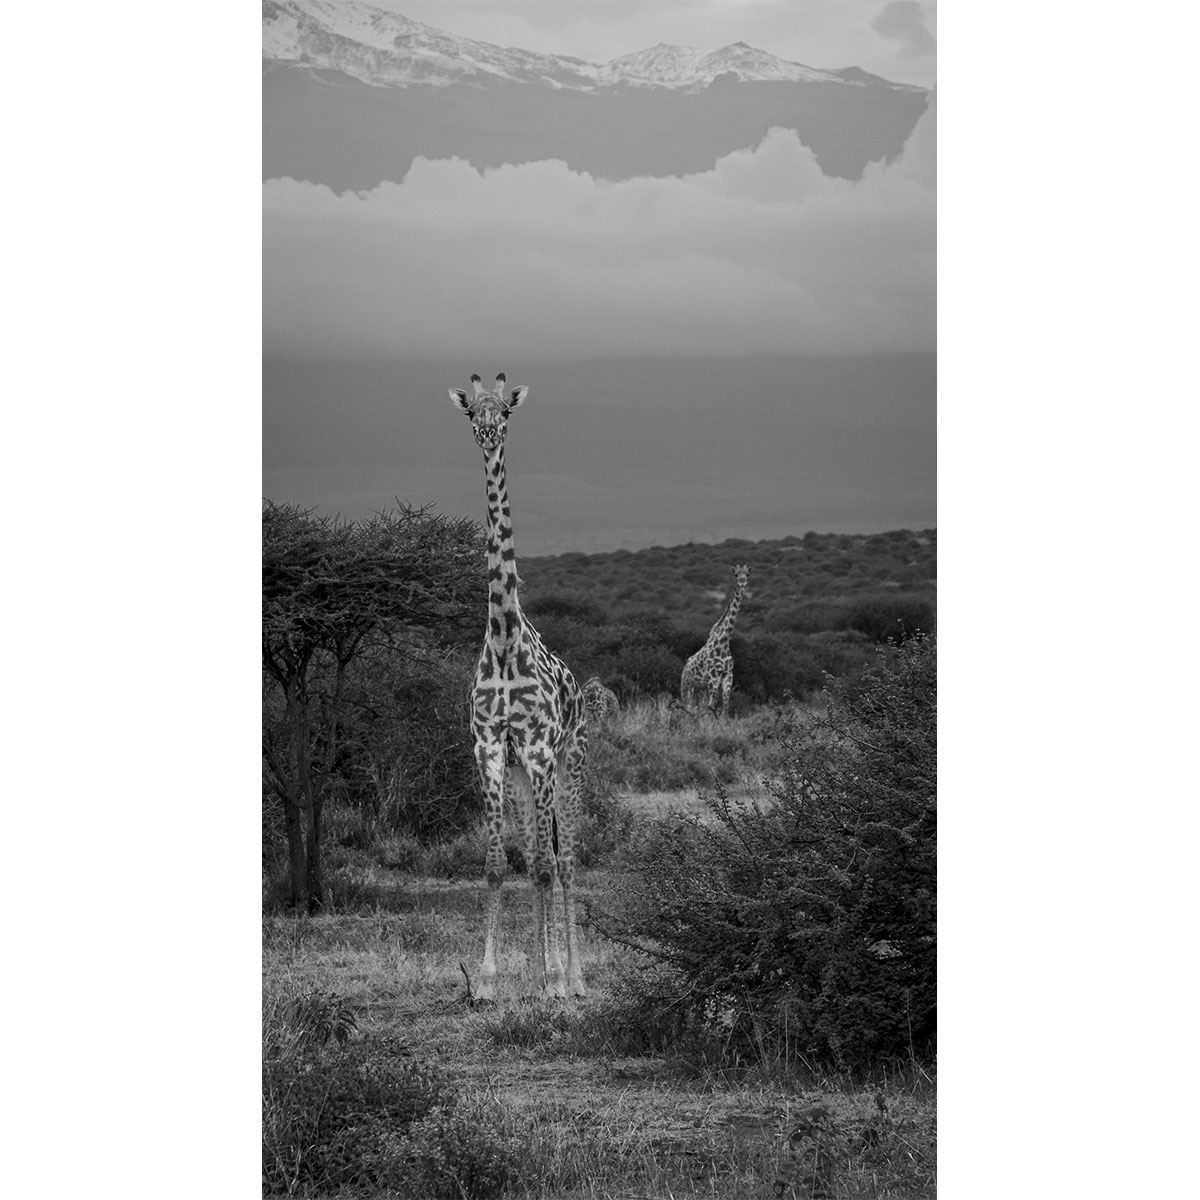 Die aufmerksame Giraffe - Kenia- Afrika - 2014